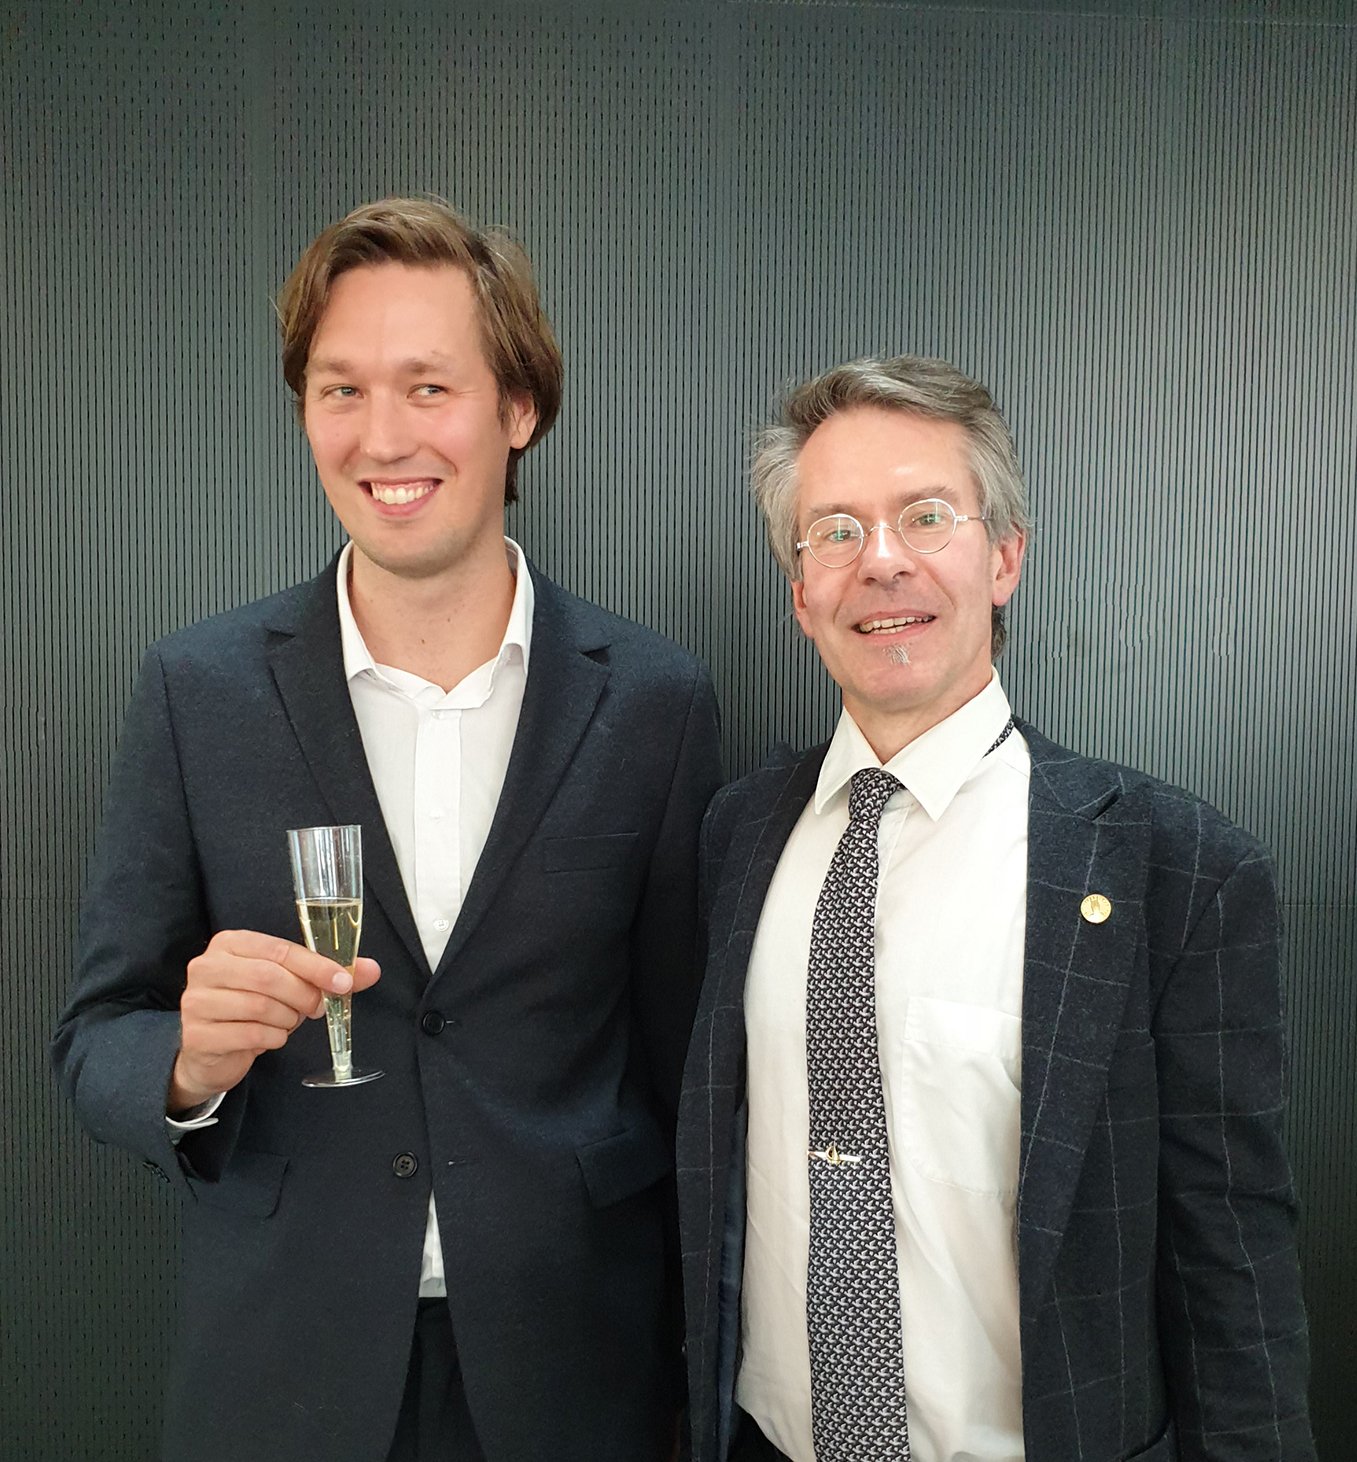 Dag Holmberg and opponent Jan Hatlebakk